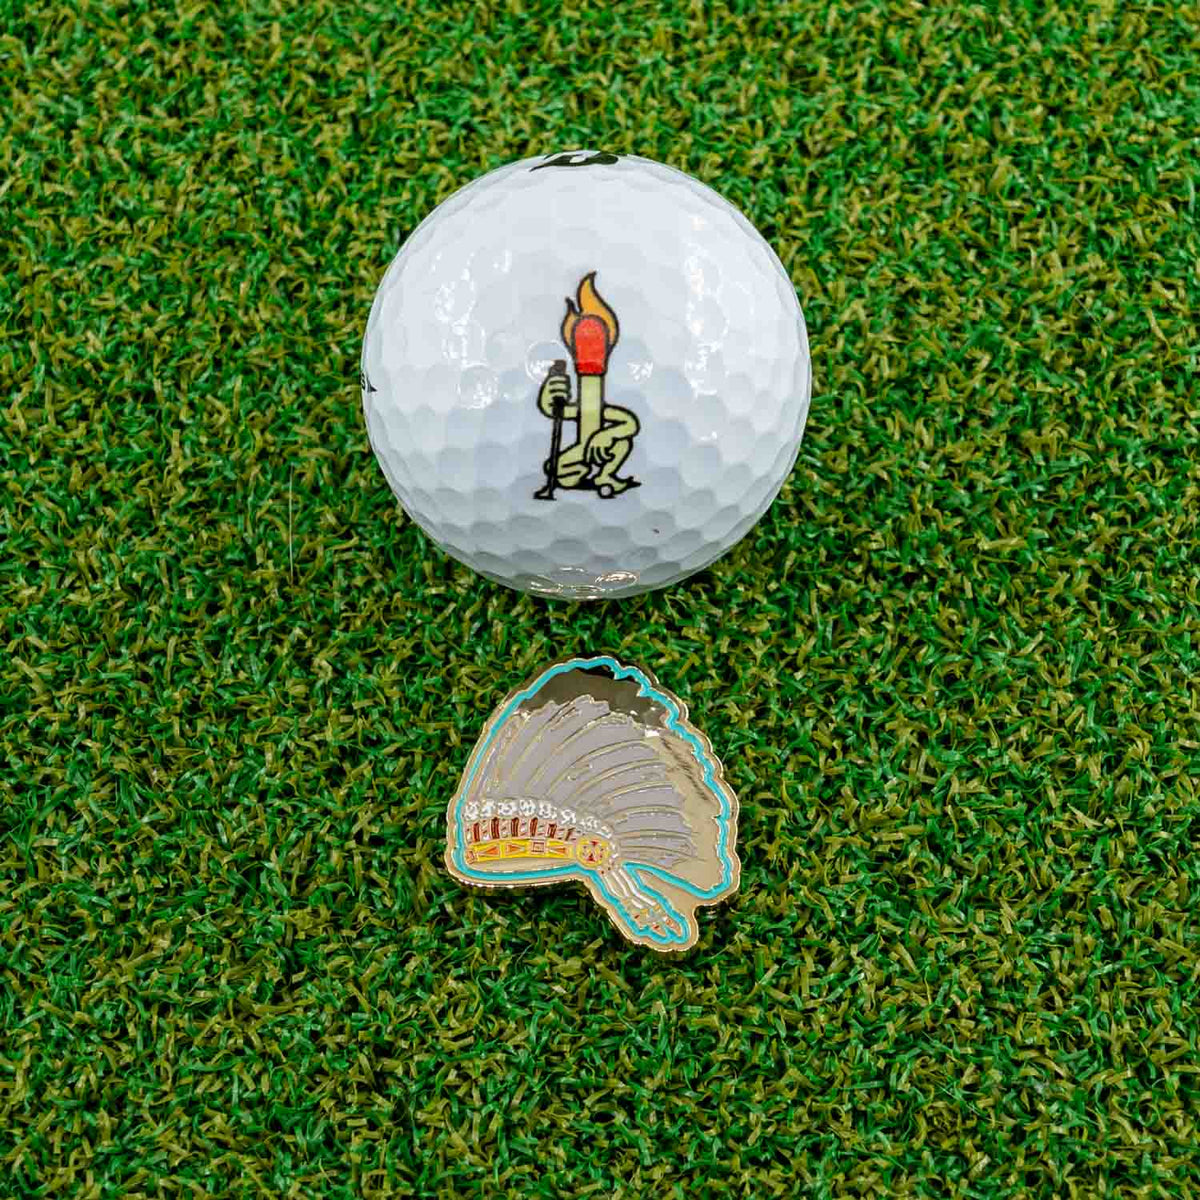 gold native indian headdress golf ball marker irene crowchild golf ball grass